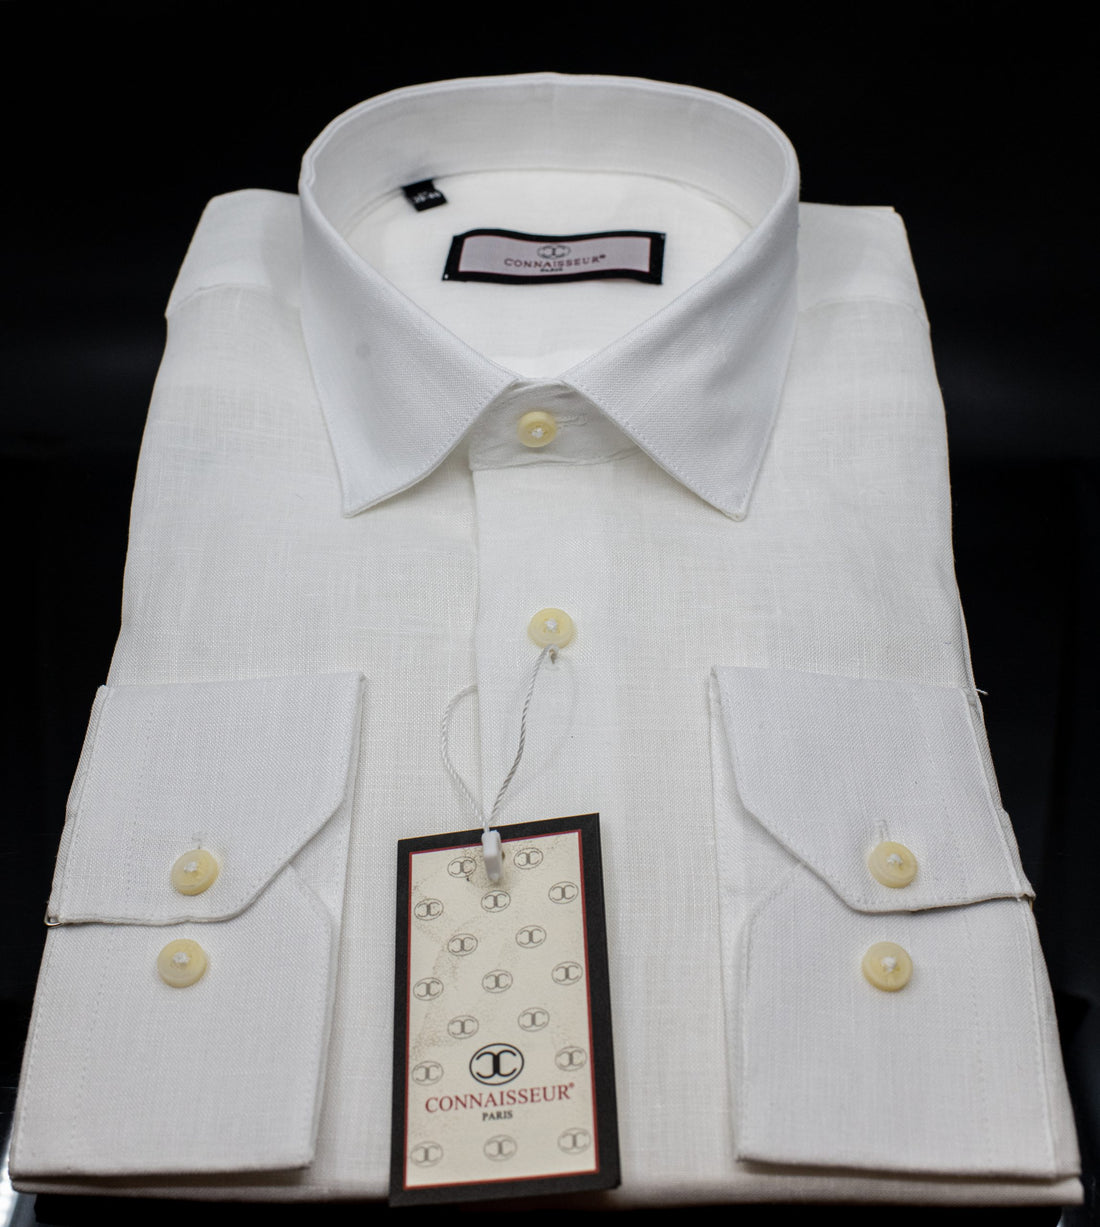 Connaisseur - White linen slim fit dress shirt